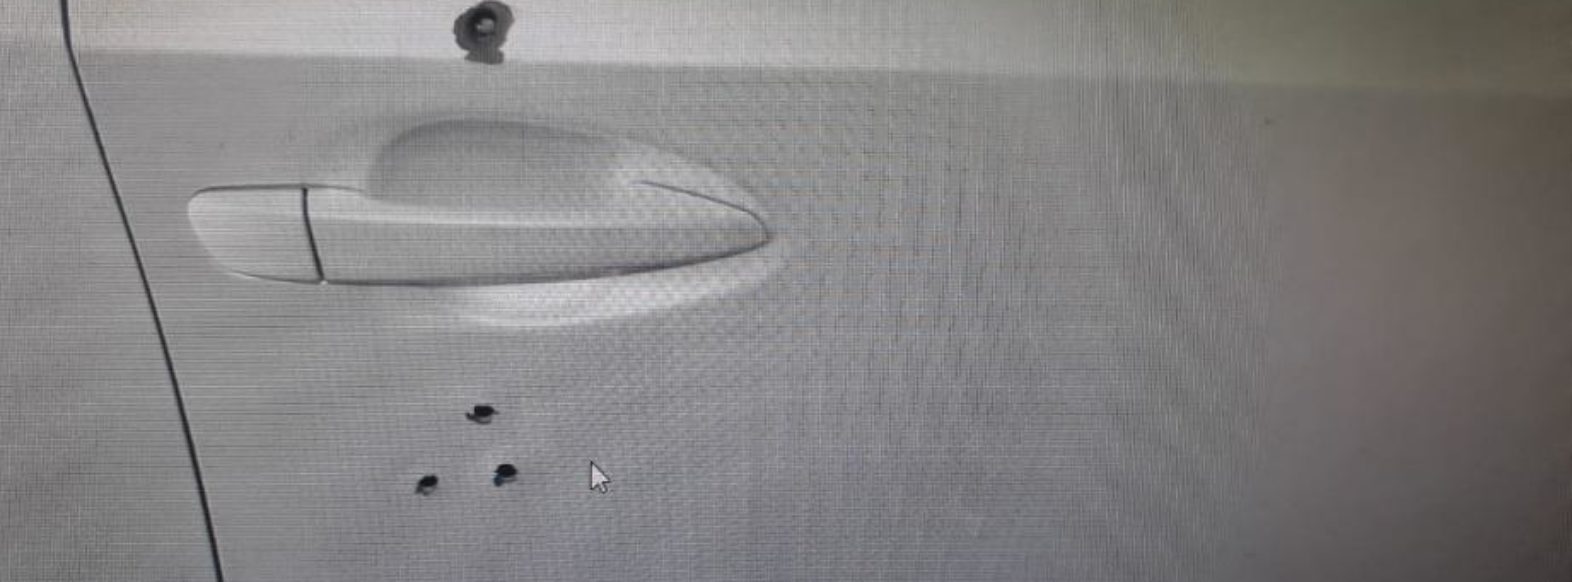 נעצר תושב קריית ים החשוד בירי לעבר תושב מוצקין